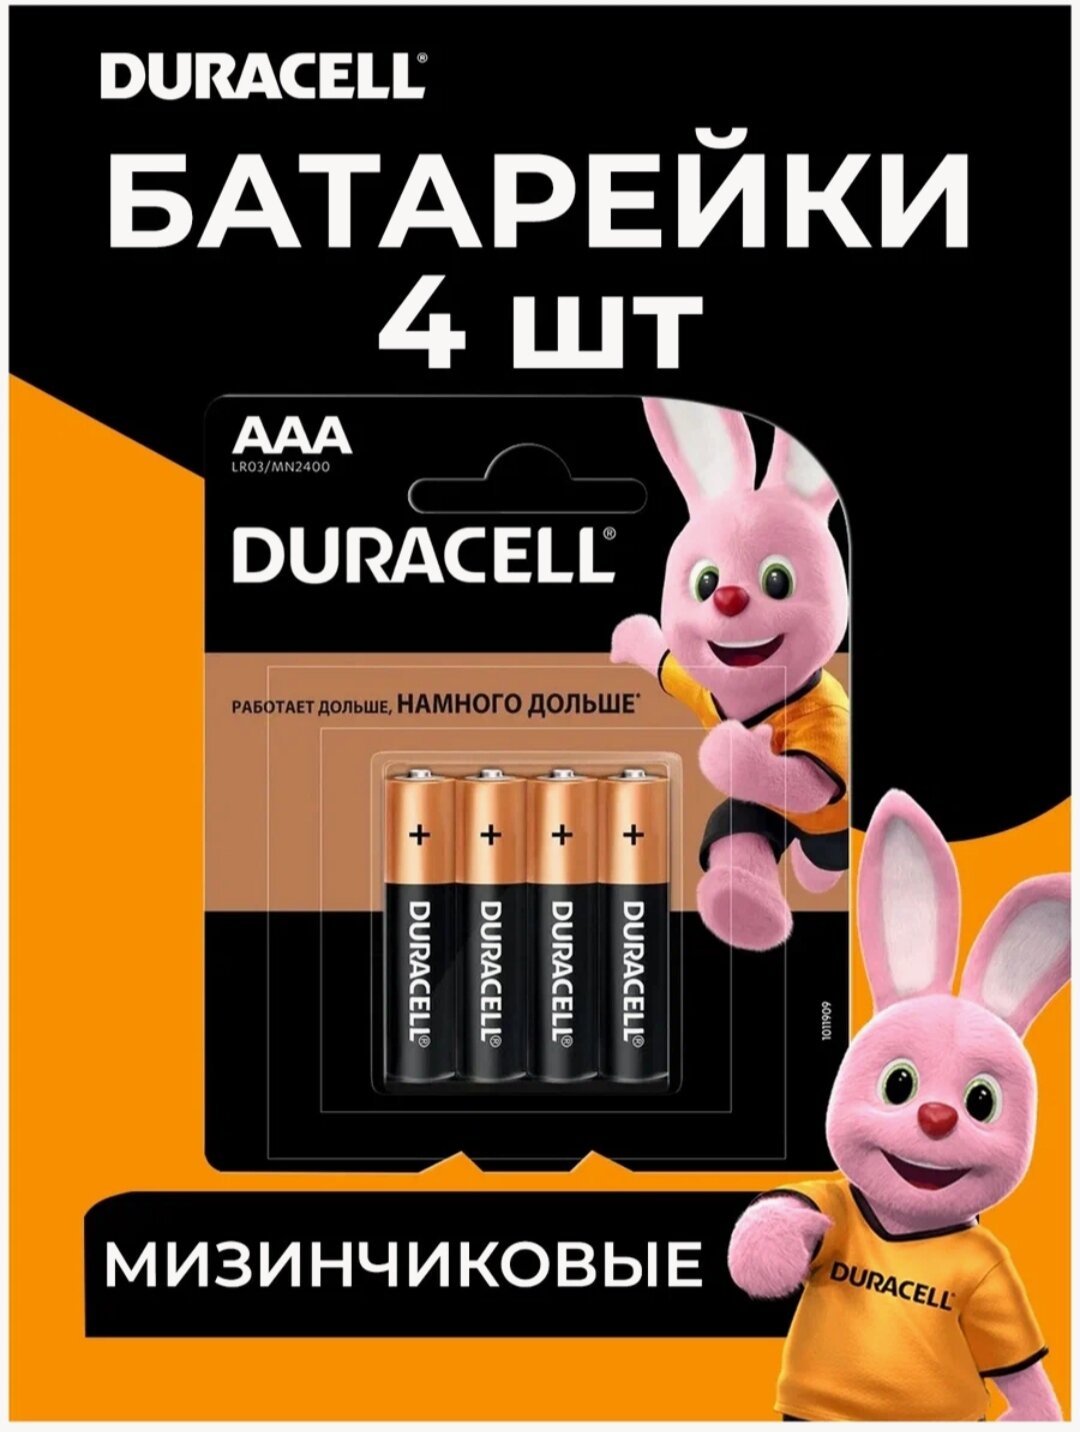 Батарейка Duracell Basic AAA, в упаковке: 4 шт.